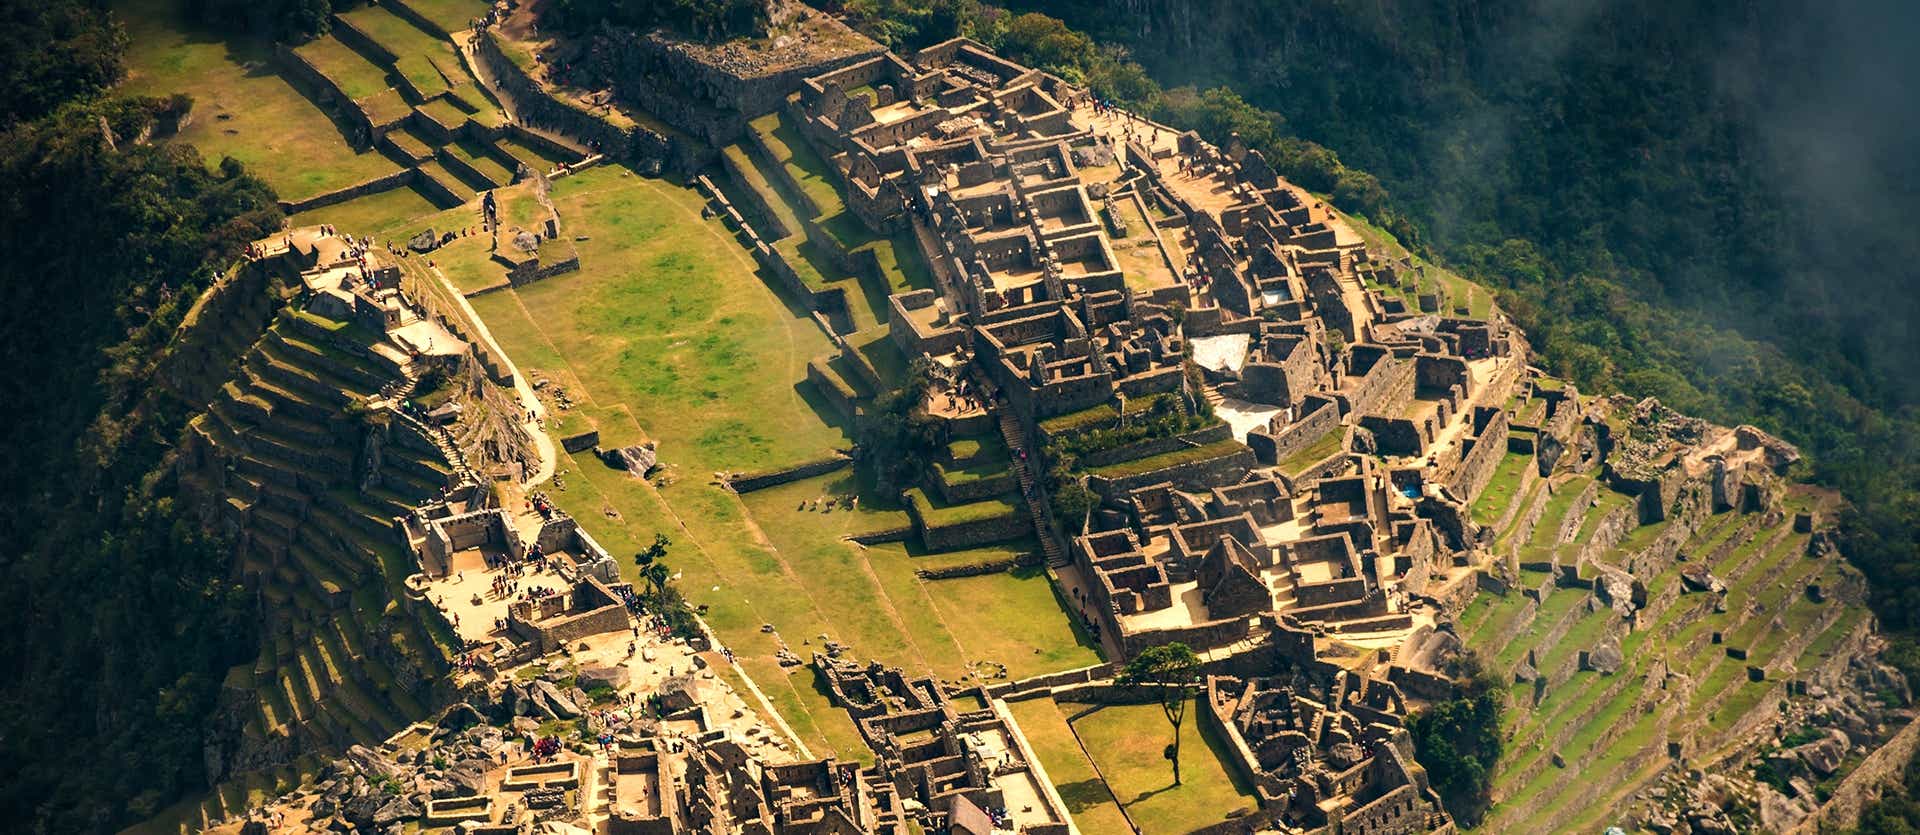 <span class="iconos separador"></span> Vista aérea del Machu Picchu <span class="iconos separador"></span>